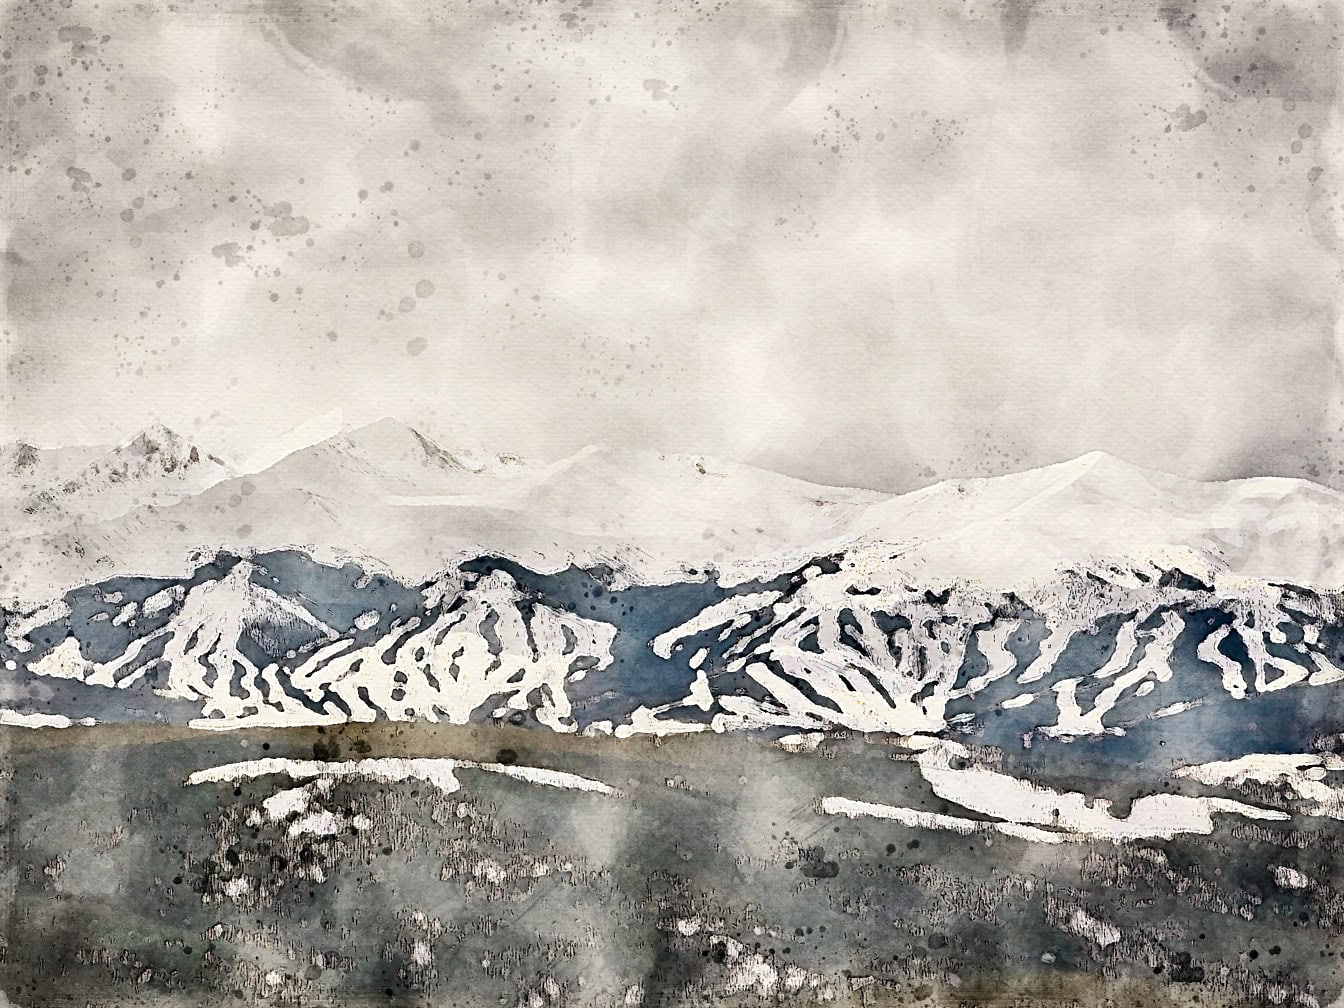 Abstrakt akvarelmaleri af en bjergkæde med sneklædte bjergtoppe